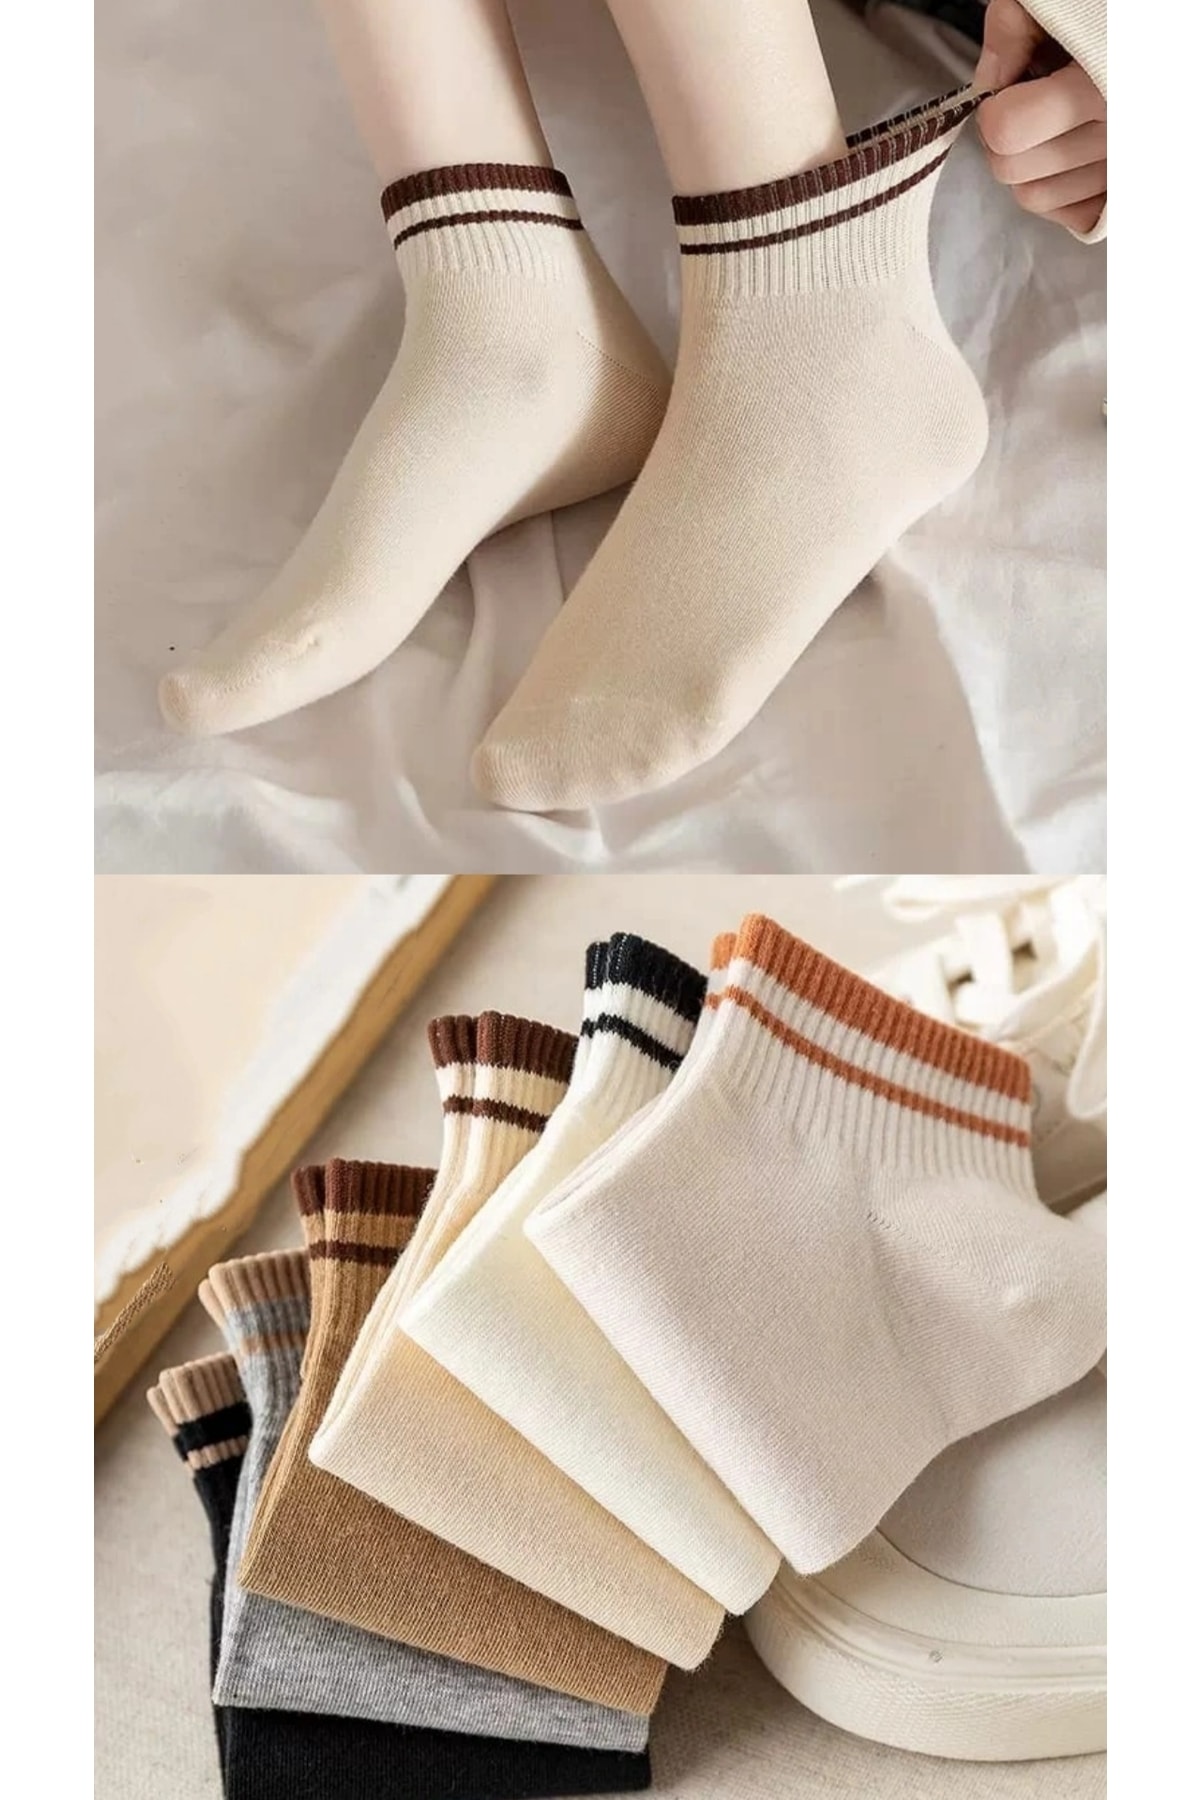 BGK Unisex Çok Renkli Çemberli 6 Çift Kısa Konç Çorap